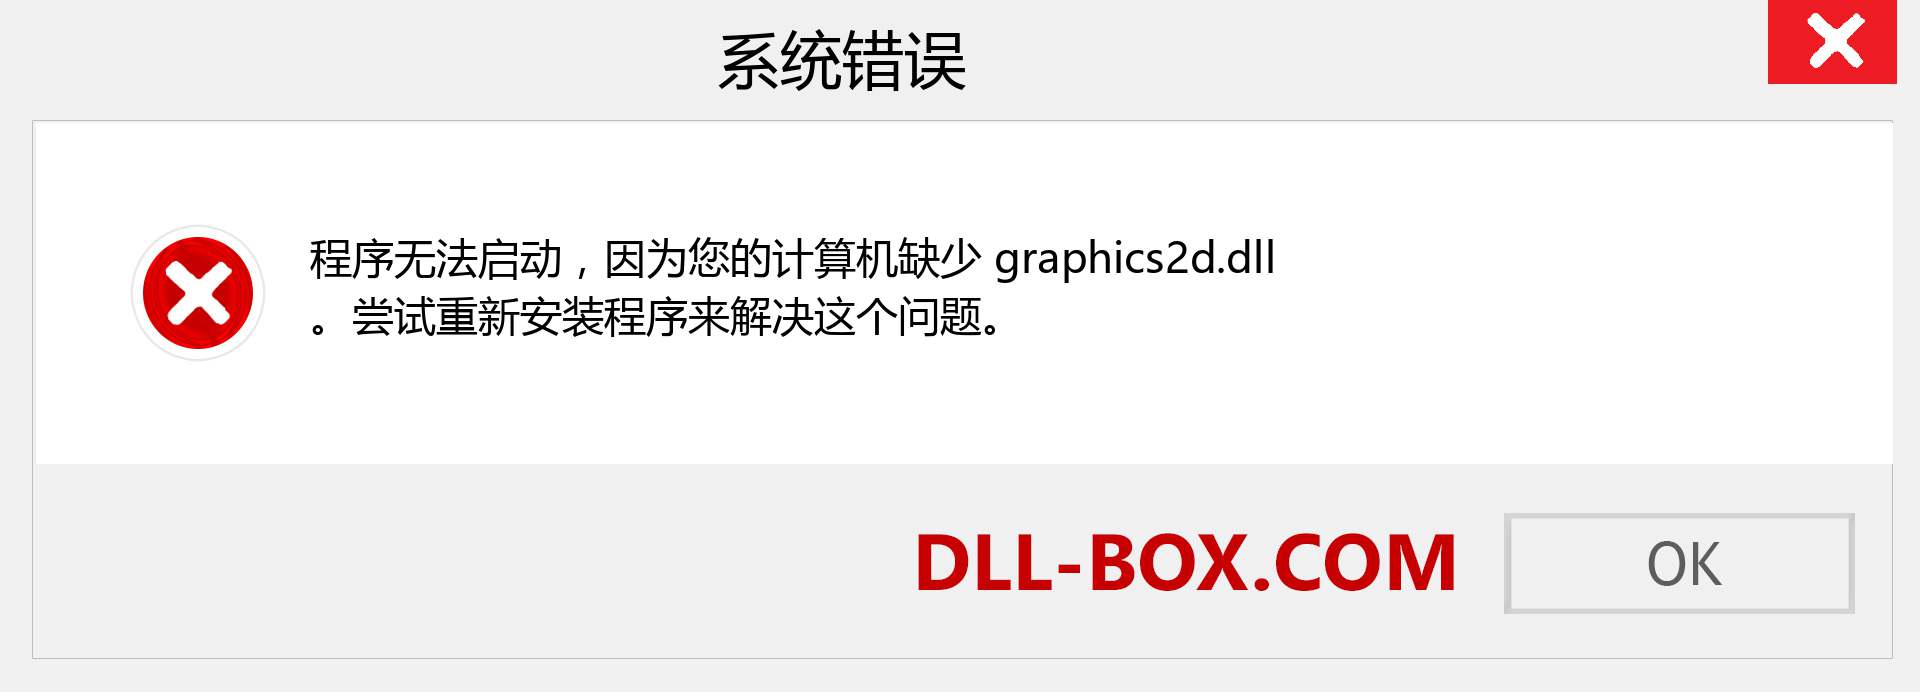 graphics2d.dll 文件丢失？。 适用于 Windows 7、8、10 的下载 - 修复 Windows、照片、图像上的 graphics2d dll 丢失错误